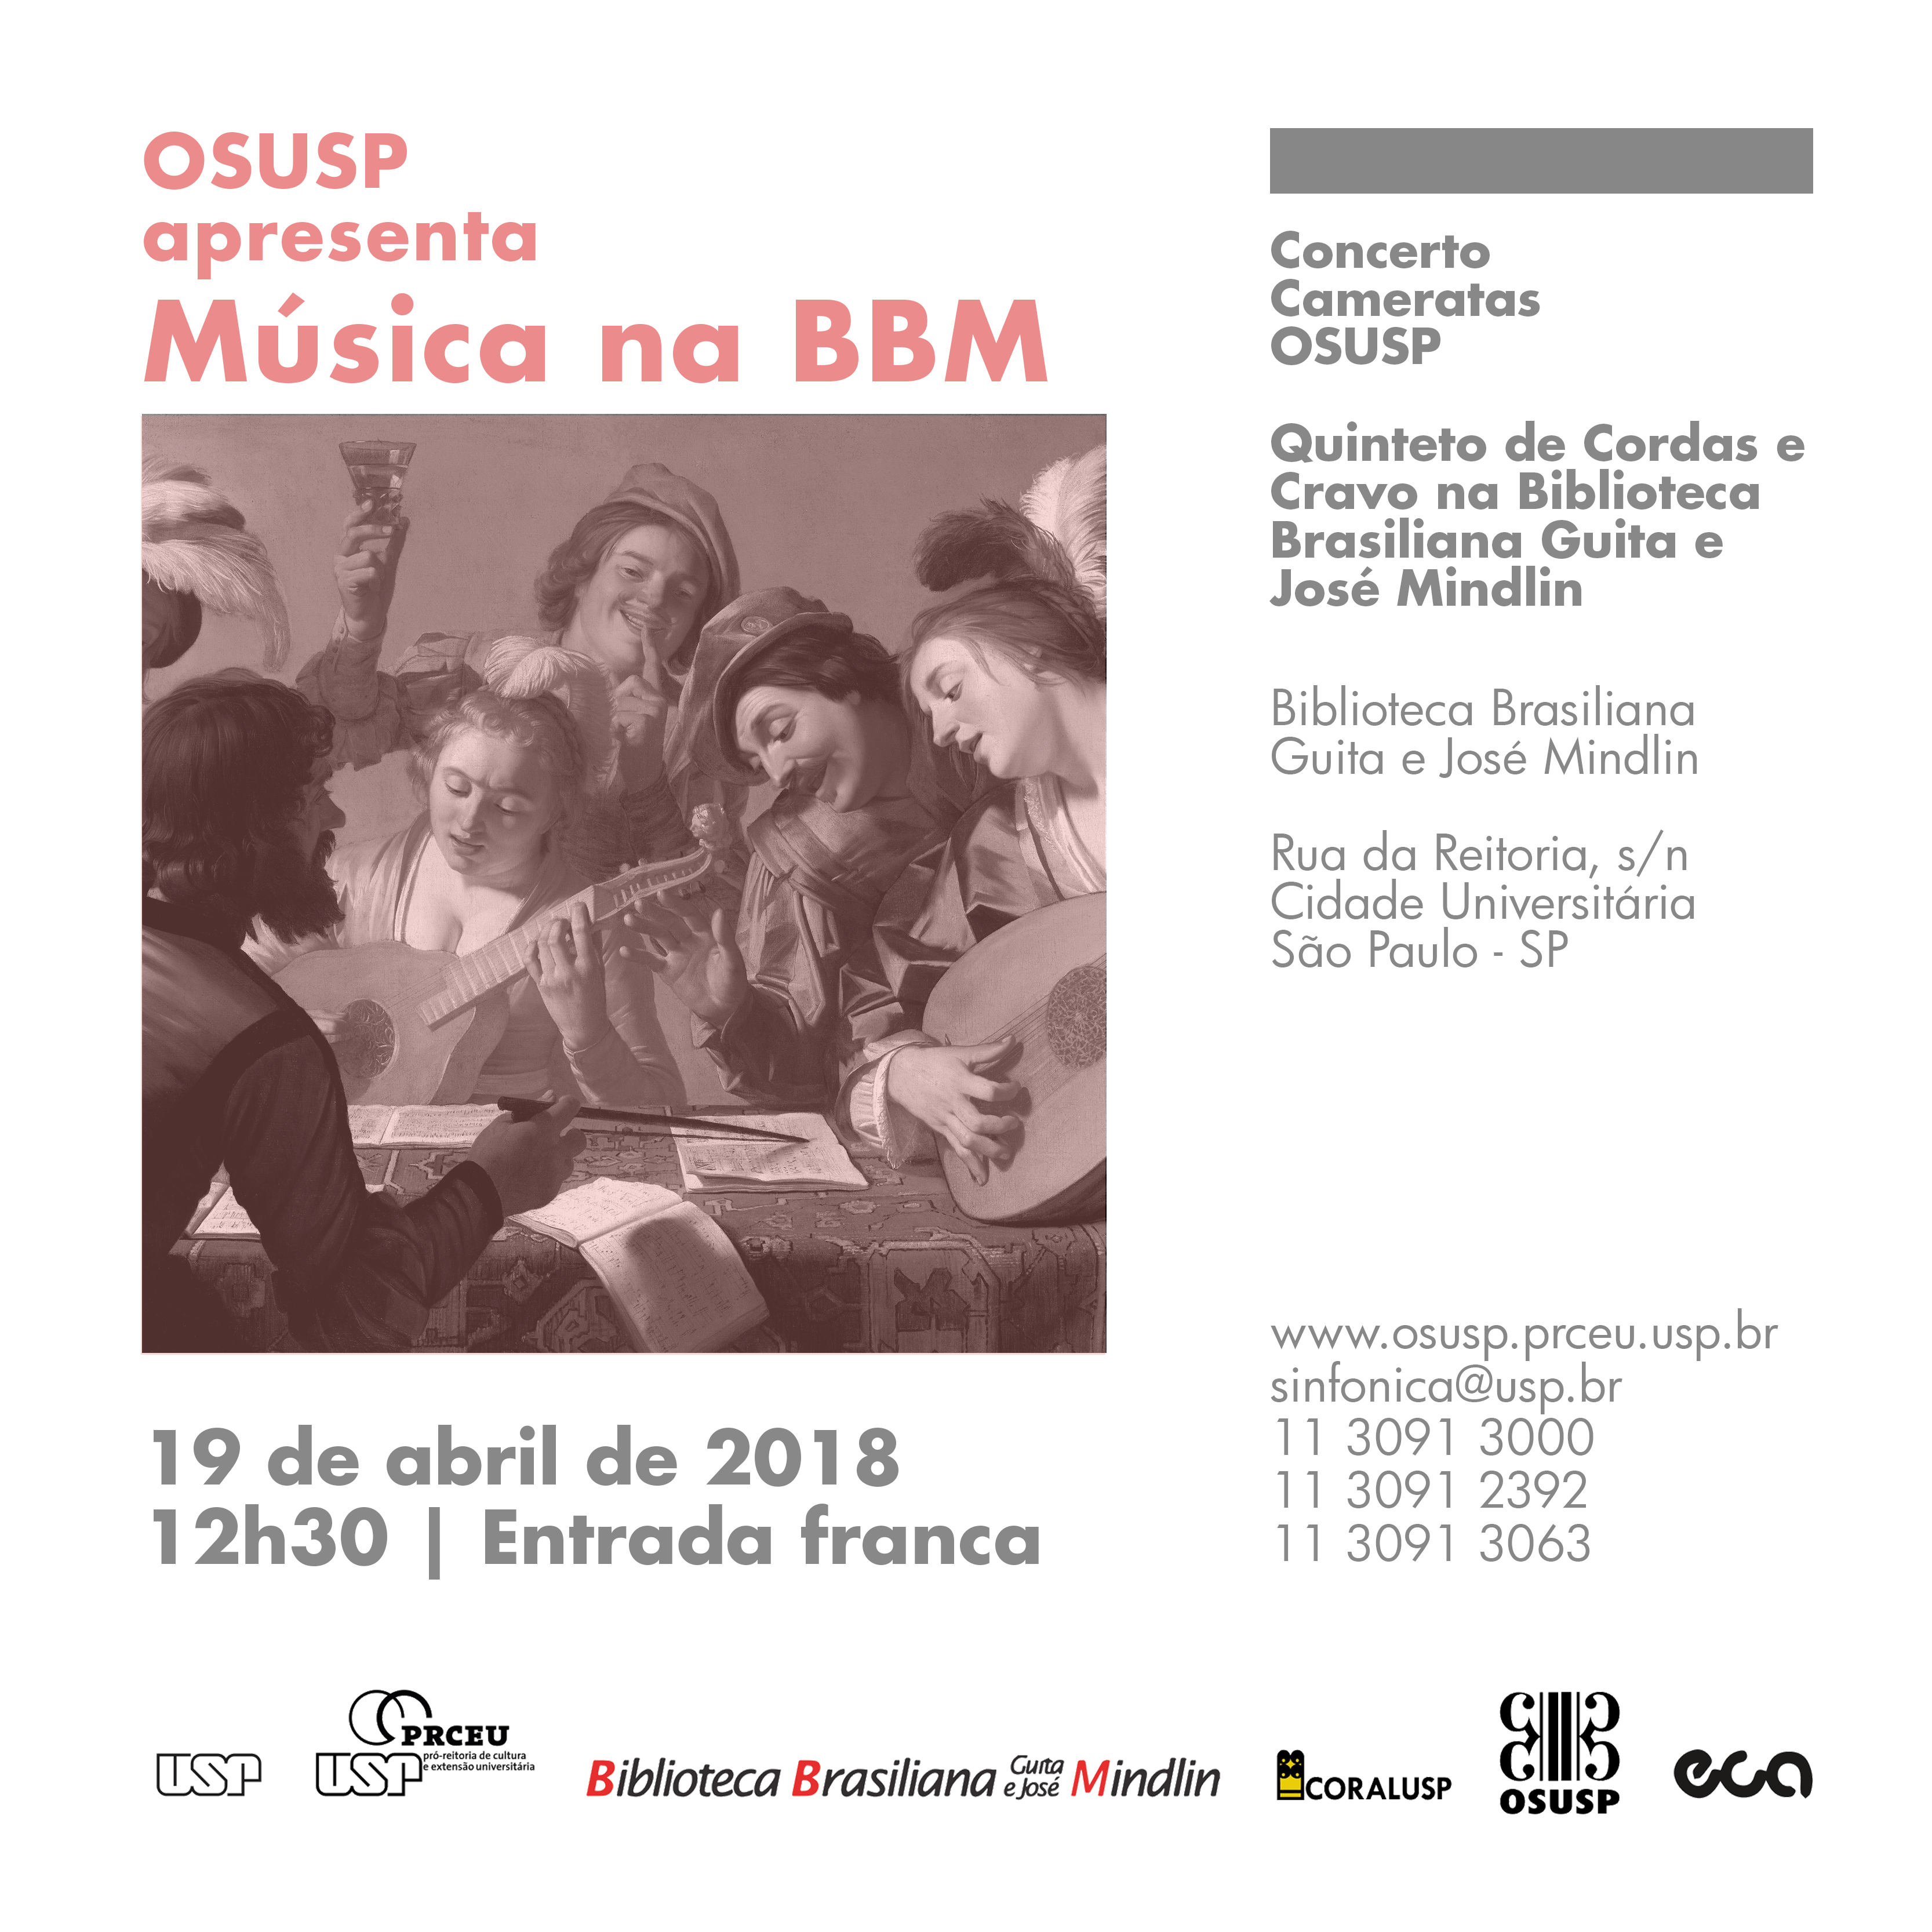 (Português) Família Bach integra o repertório de abril da Camerata OSUSP